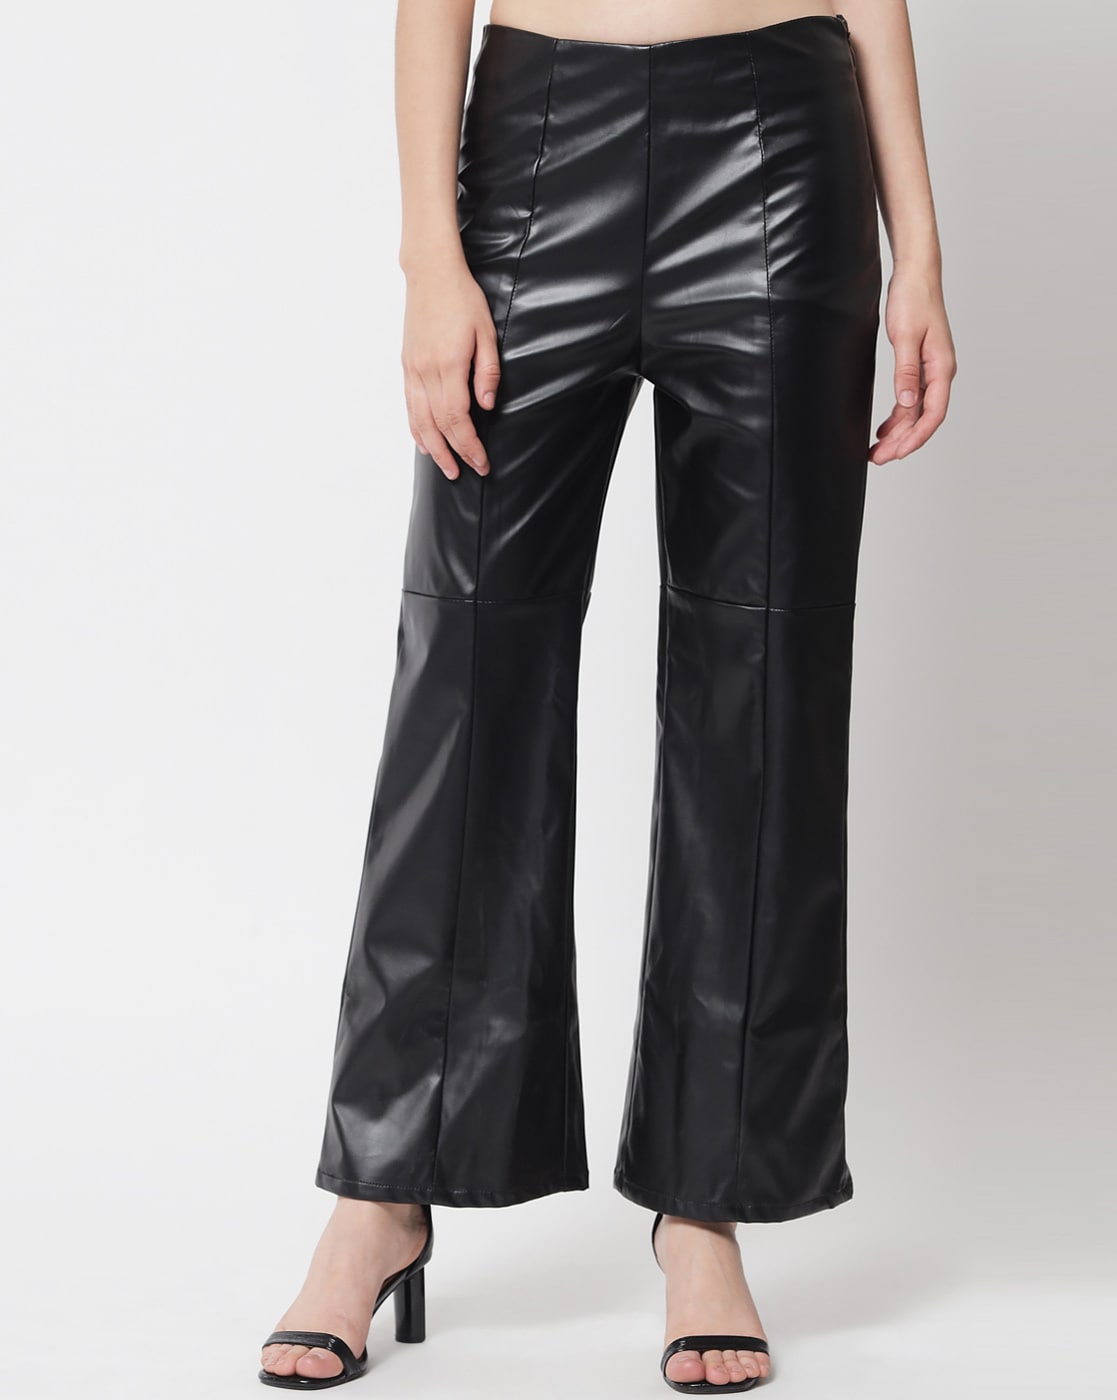 Buy Black Trousers  Pants for Women by KOTTY Online  Ajiocom